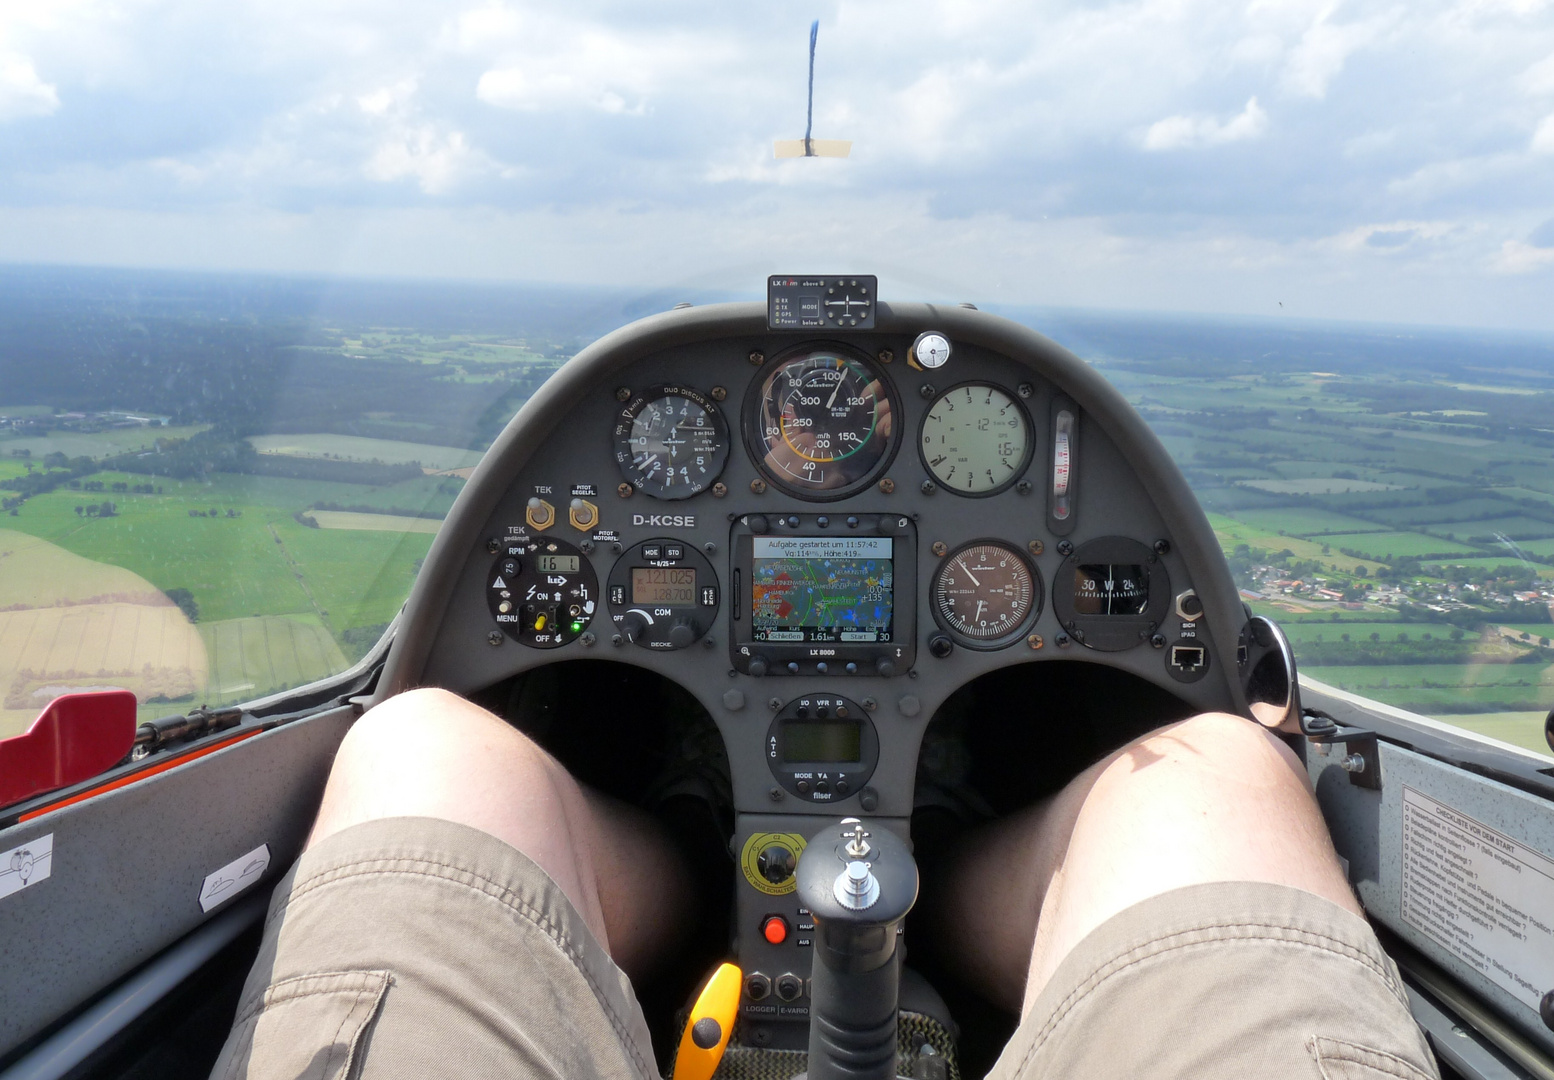 Duo-Discus XLT Cockpit in flight